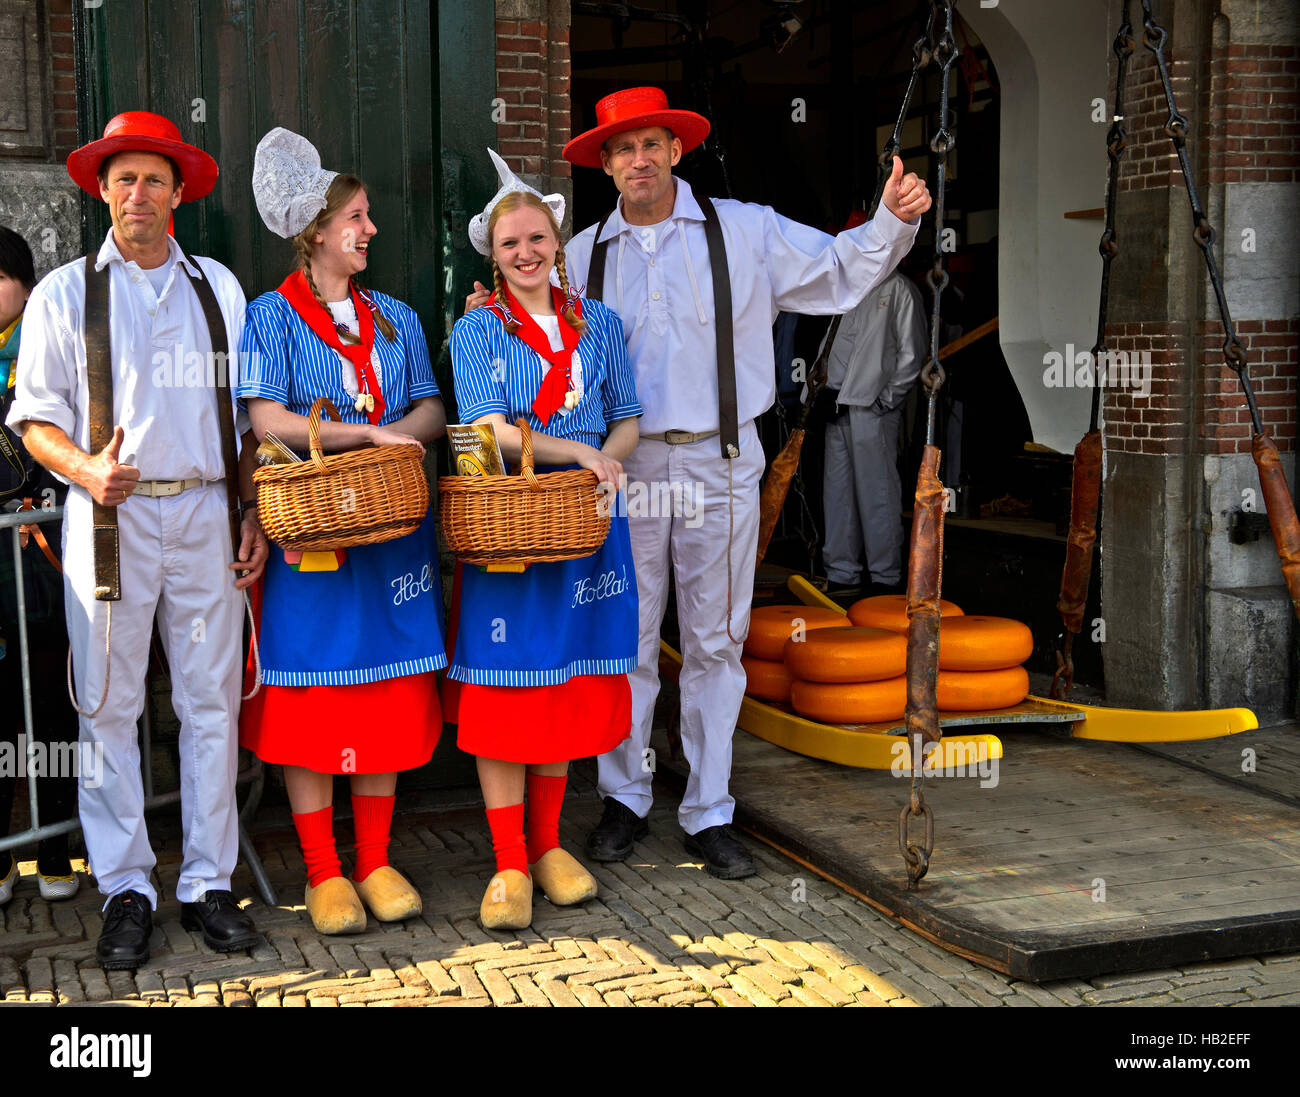 Les filles au fromage hollandais, Kaasmeisje, costume traditionnel, le  fromage, les transporteurs du marché du fromage, Alkmaar, Pays-Bas, Pays-Bas  Photo Stock - Alamy